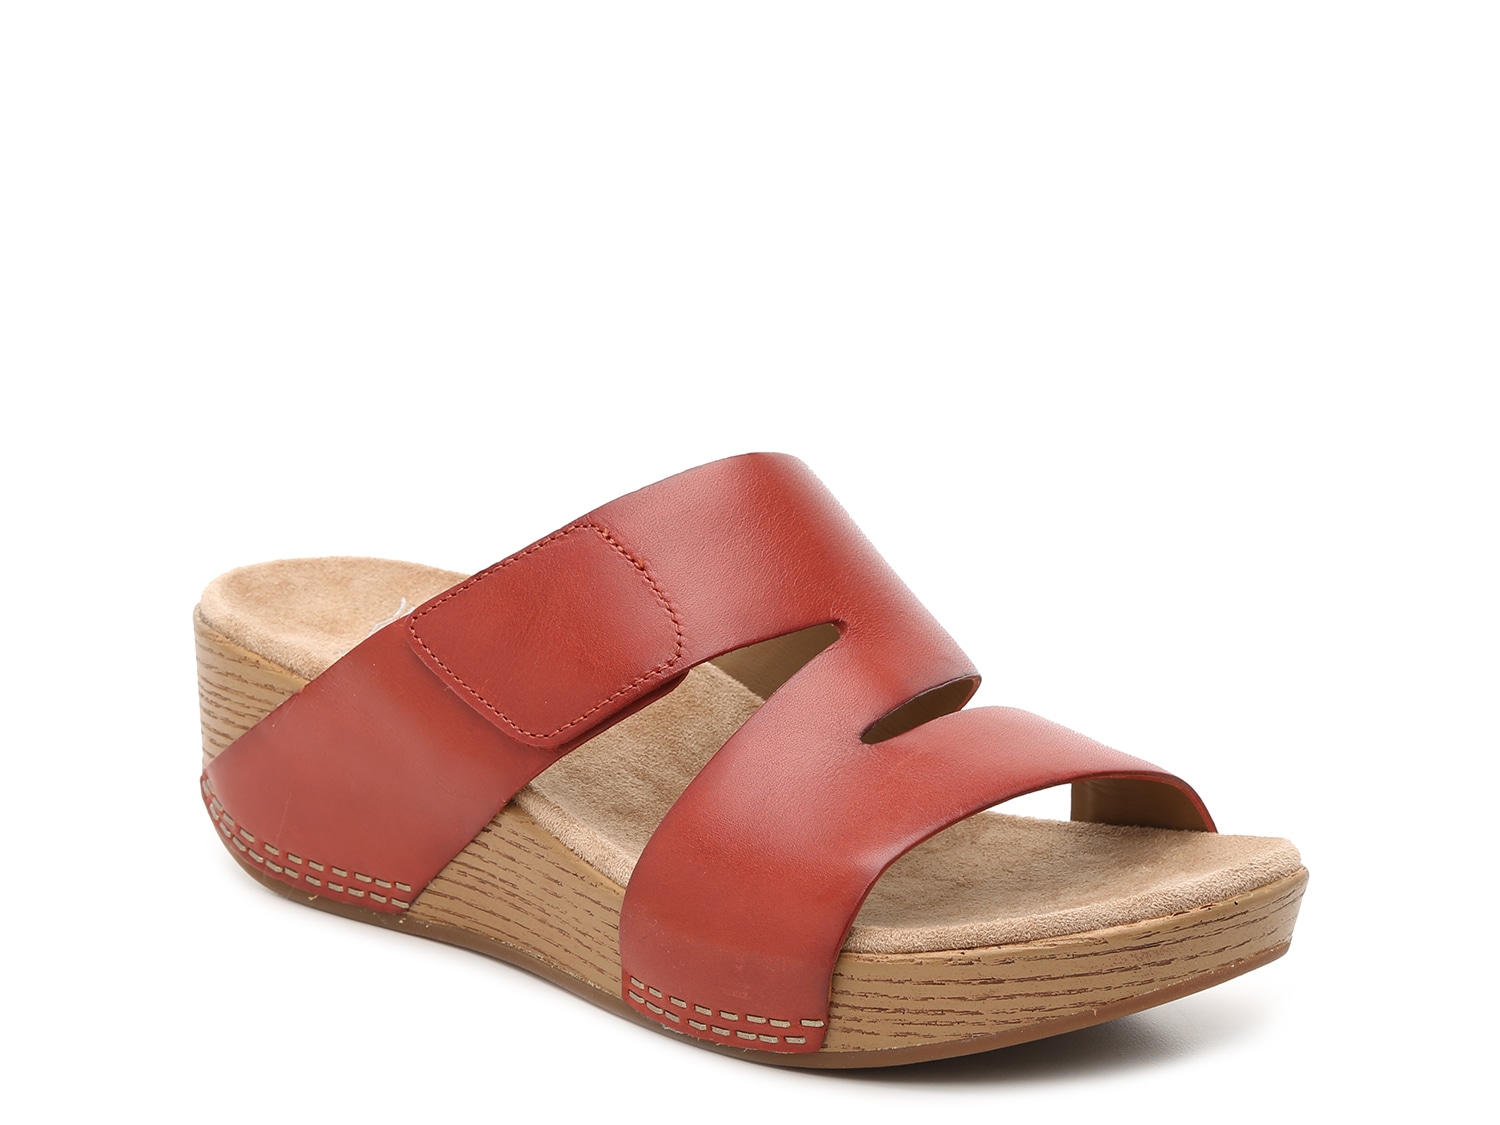 dansko sandals wide width